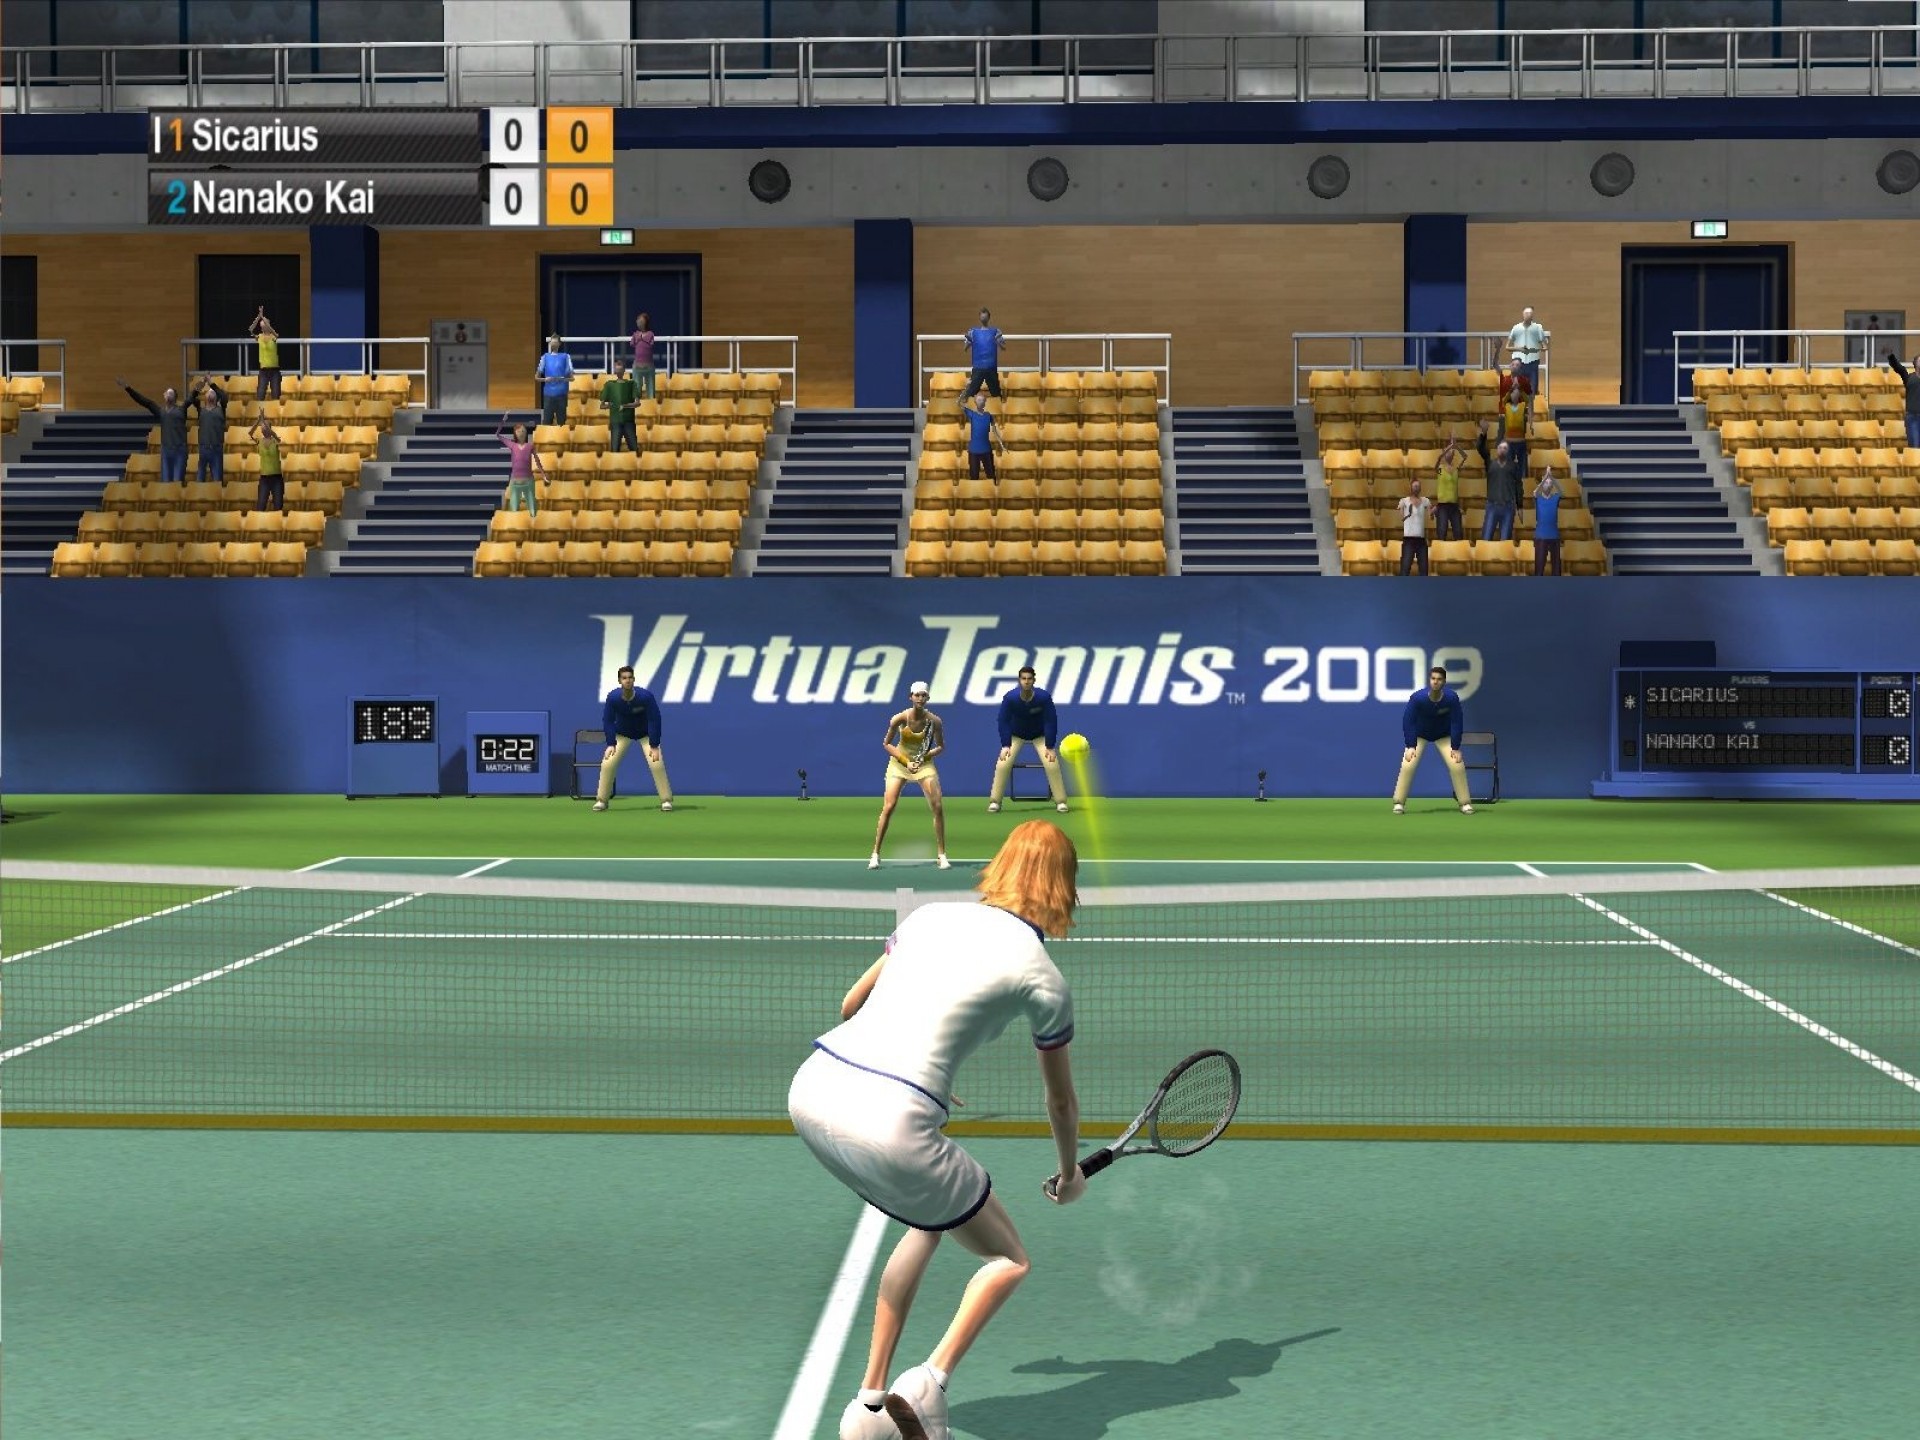 Virtua tennis 2009 steam